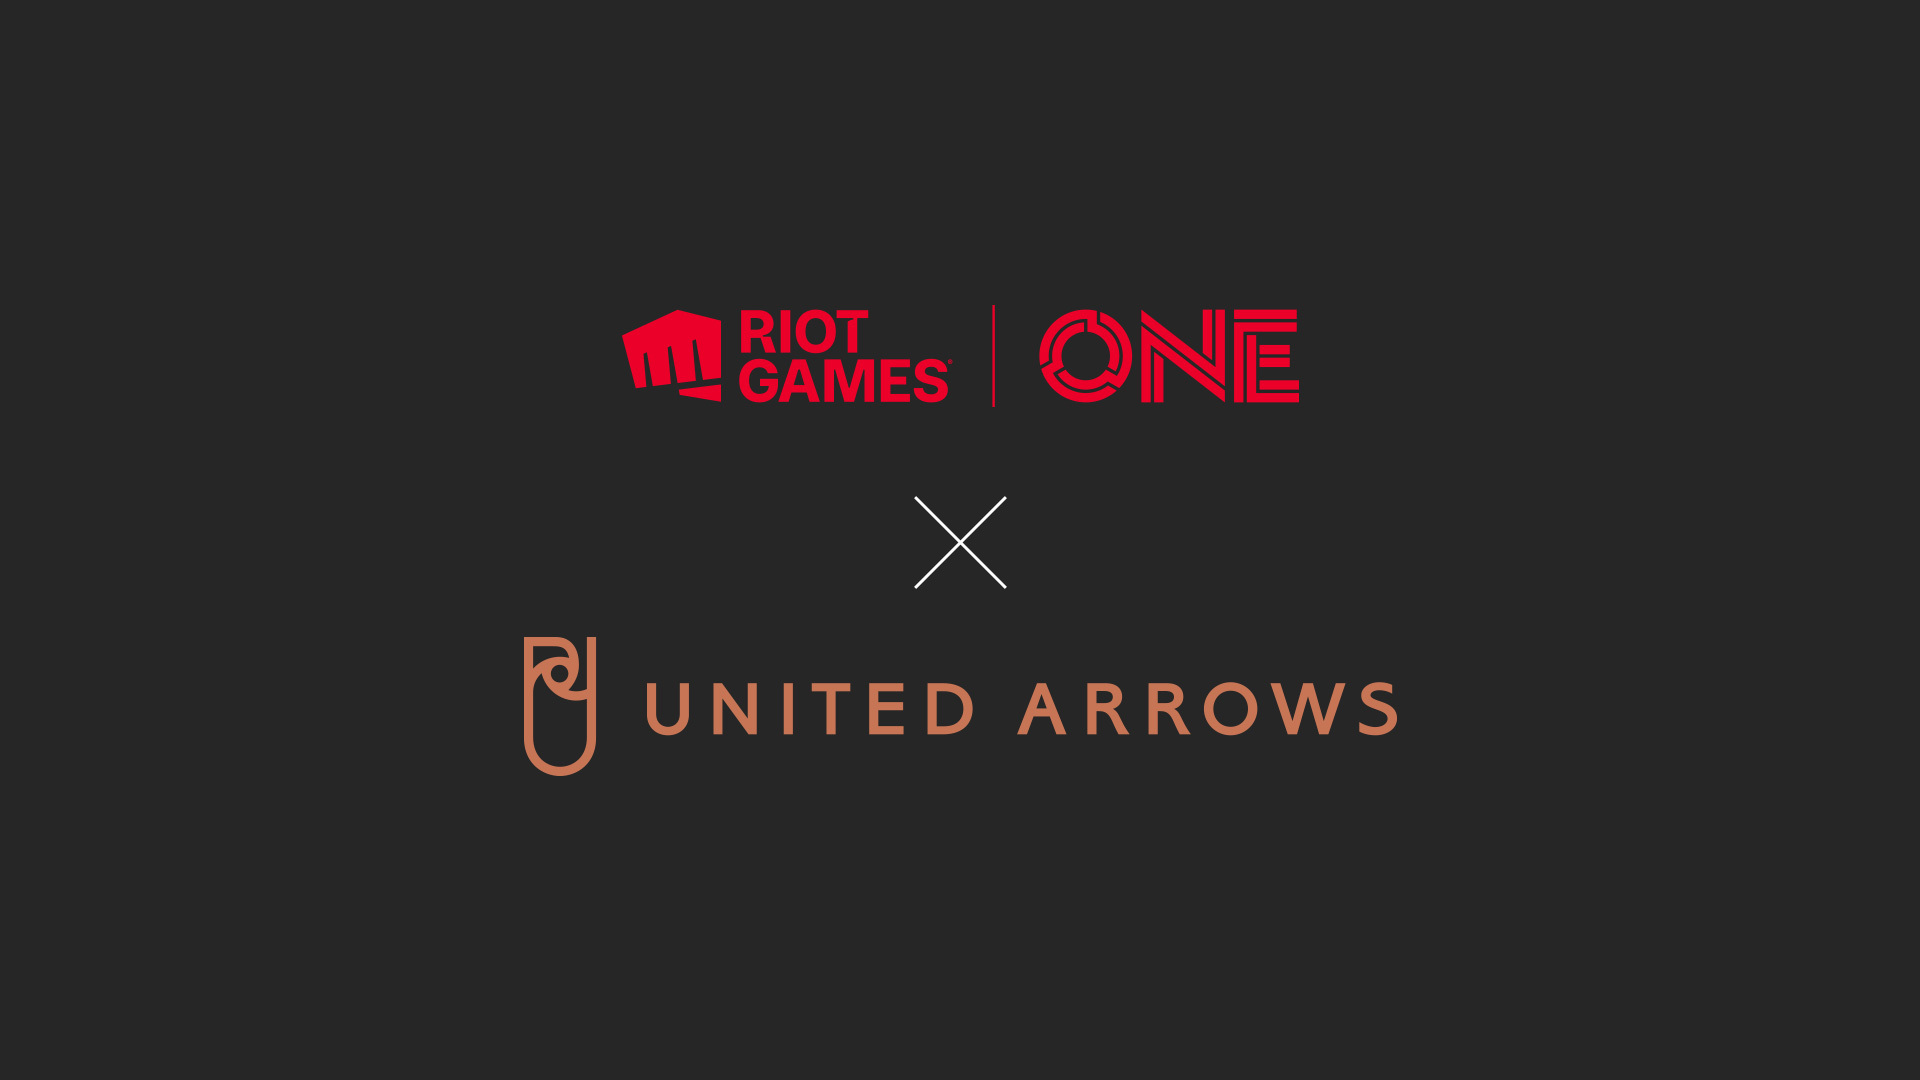 【Riot Games ONE情報】UNITED ARROWSのコラボが決定！コラボグッズが12月23日〜24日のオフラインイベントで販売！